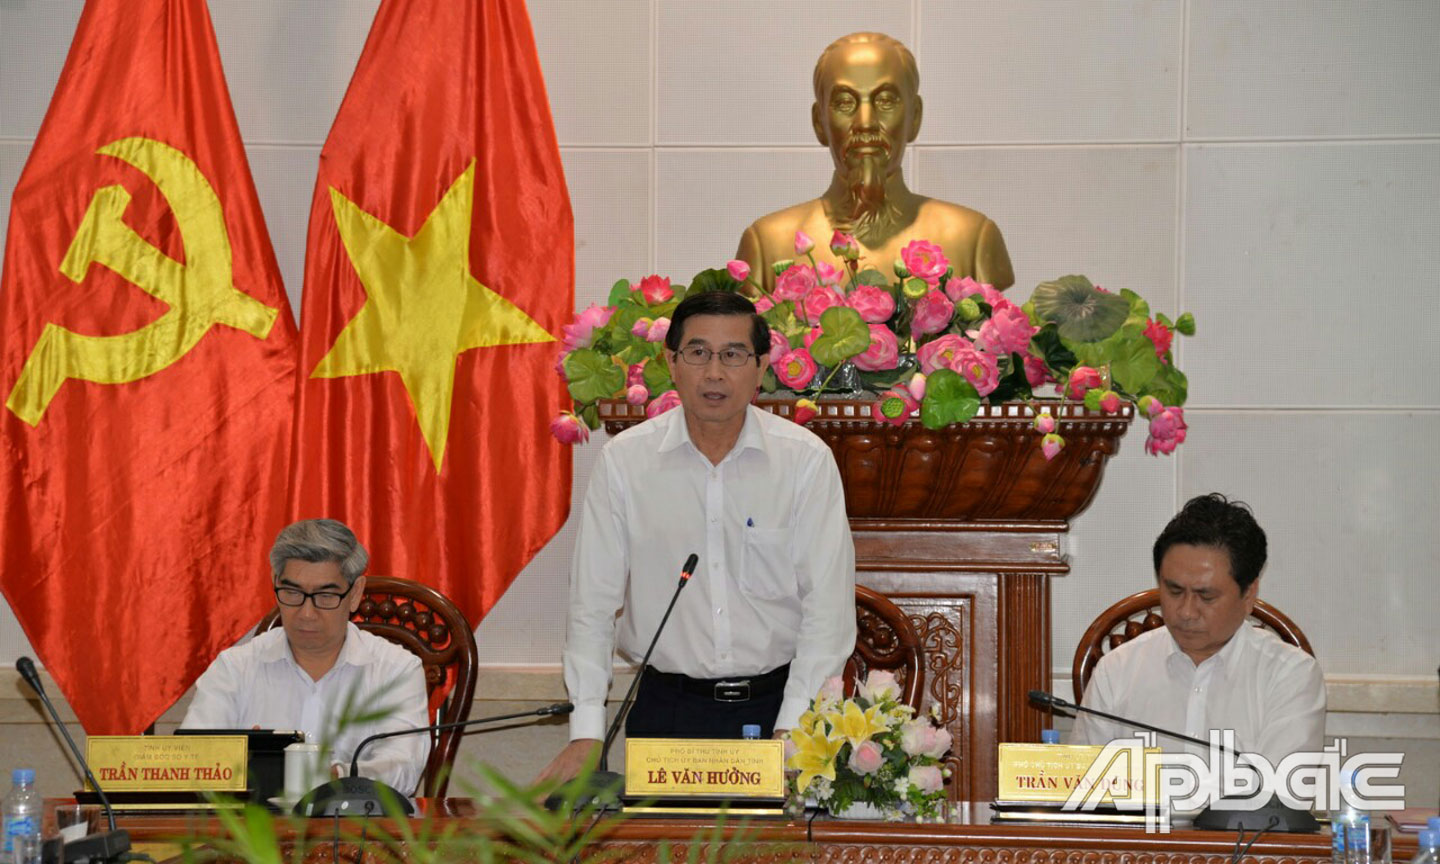 Phát biểu tại cuộc họp, đồng chí Lê Văn Hưởng khuyến cáo người dân đeo khẩu trang nơi đông người.